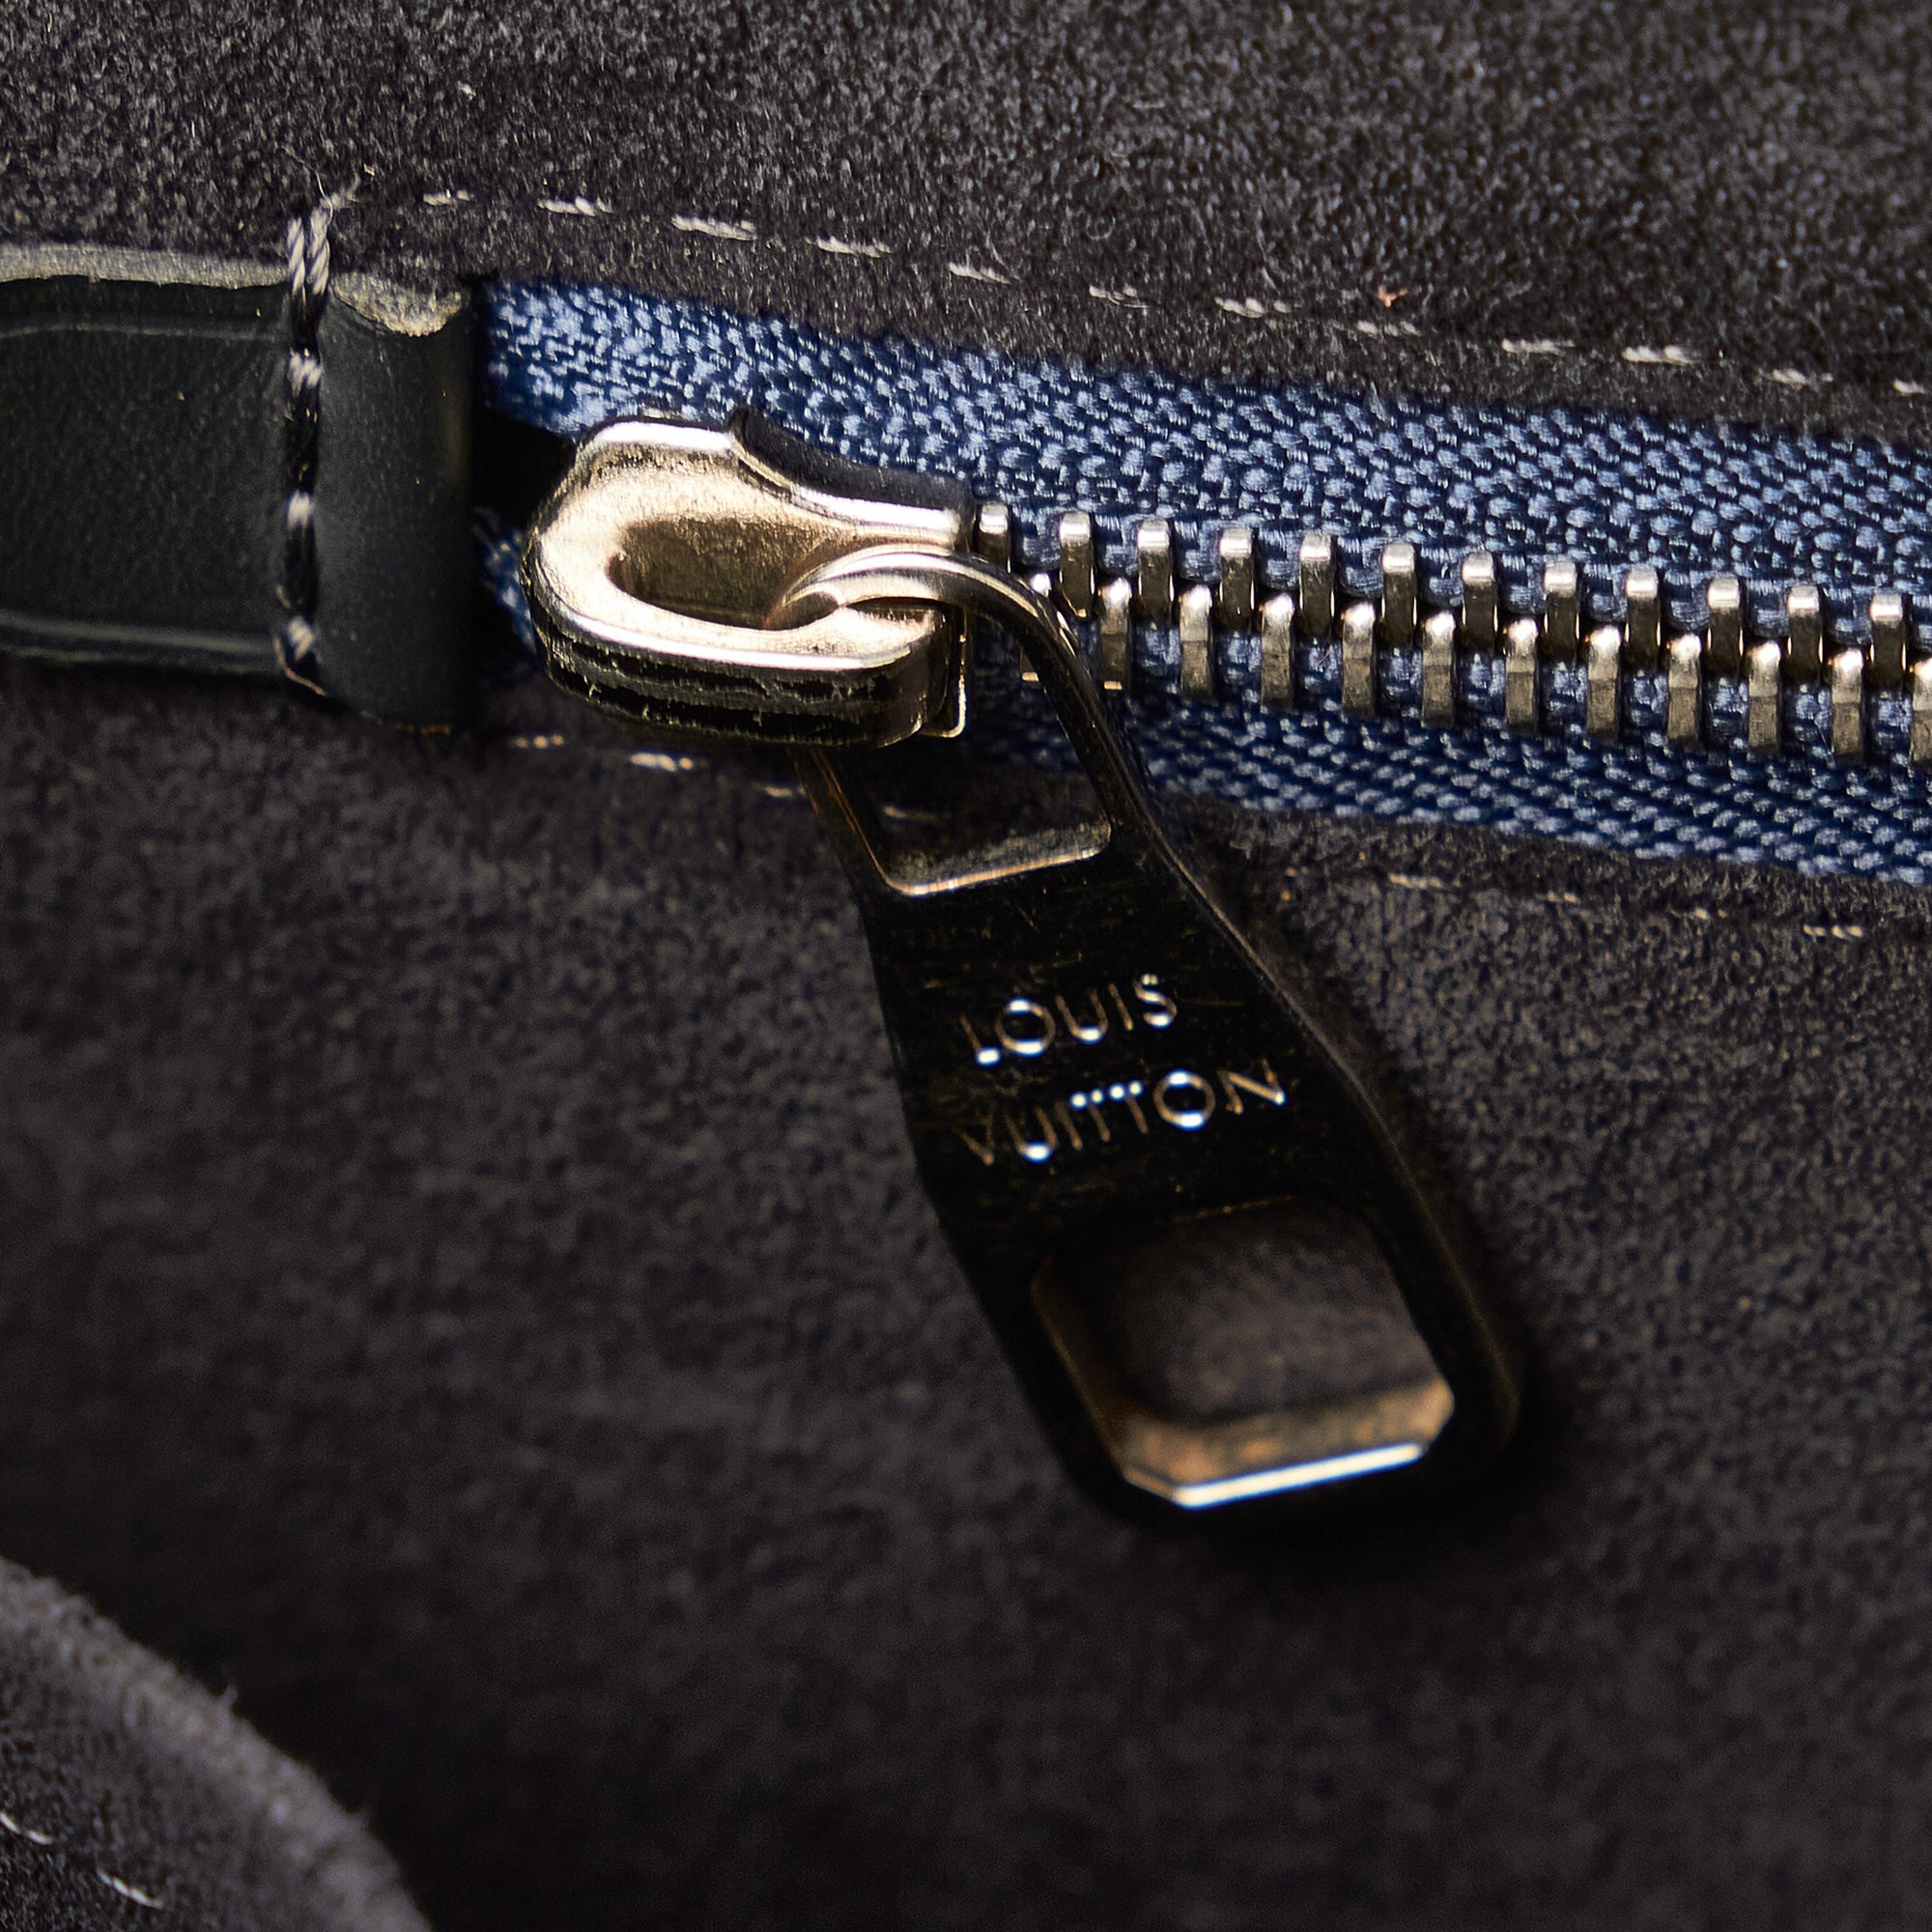 Louis Vuitton Backpack Newport Damier Cobalt Black/Midnight Blue